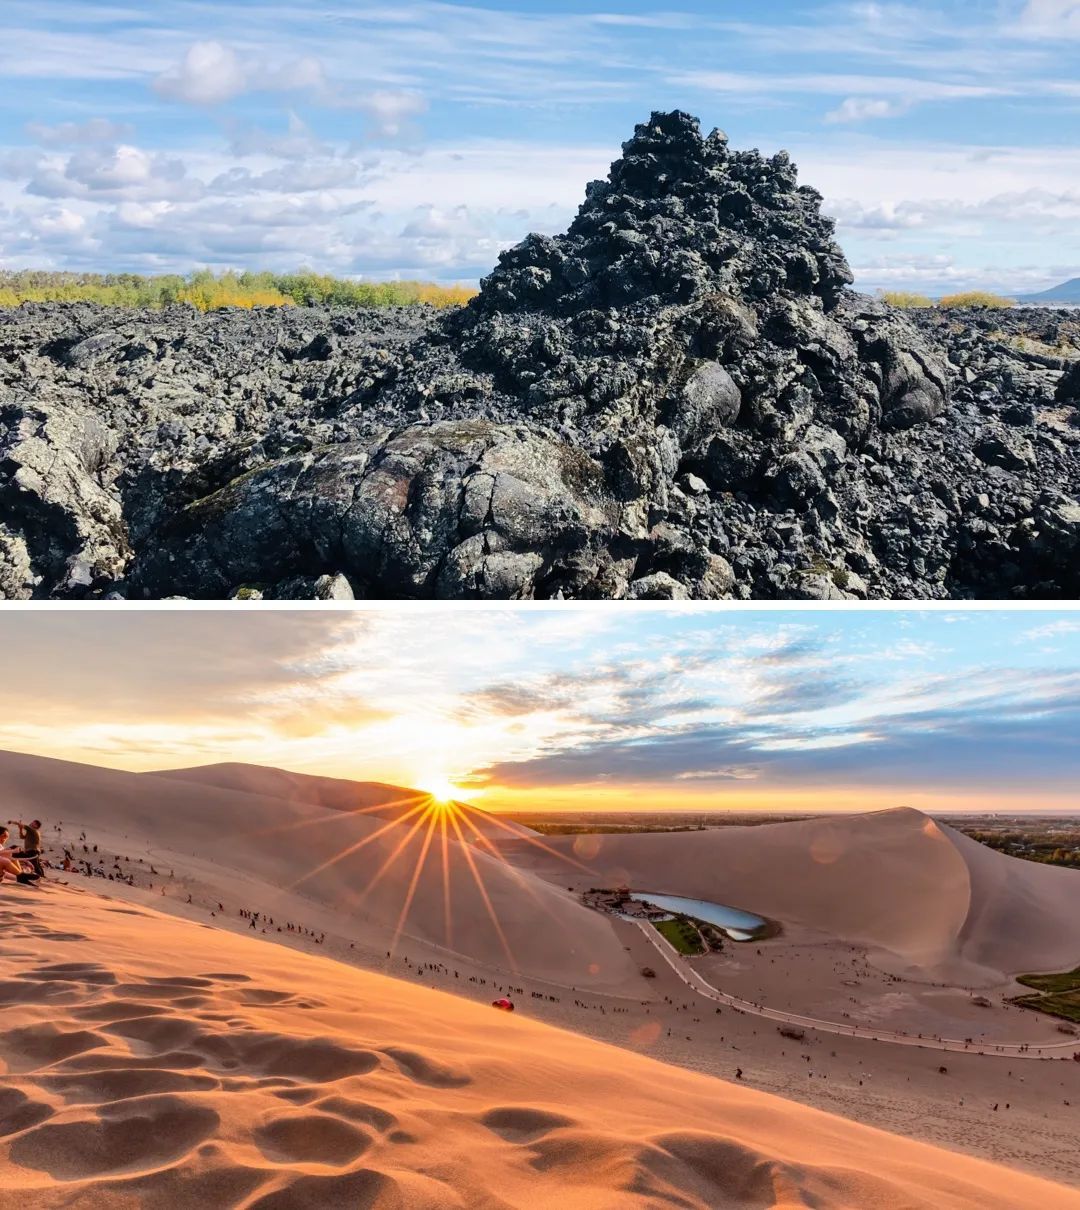 上：喷涌而出的岩浆凝固在五大连池的岩石里 ©图虫创意；下：万顷海浪经地质演化形成的阿拉善沙漠世界地质公园 ©图虫创意